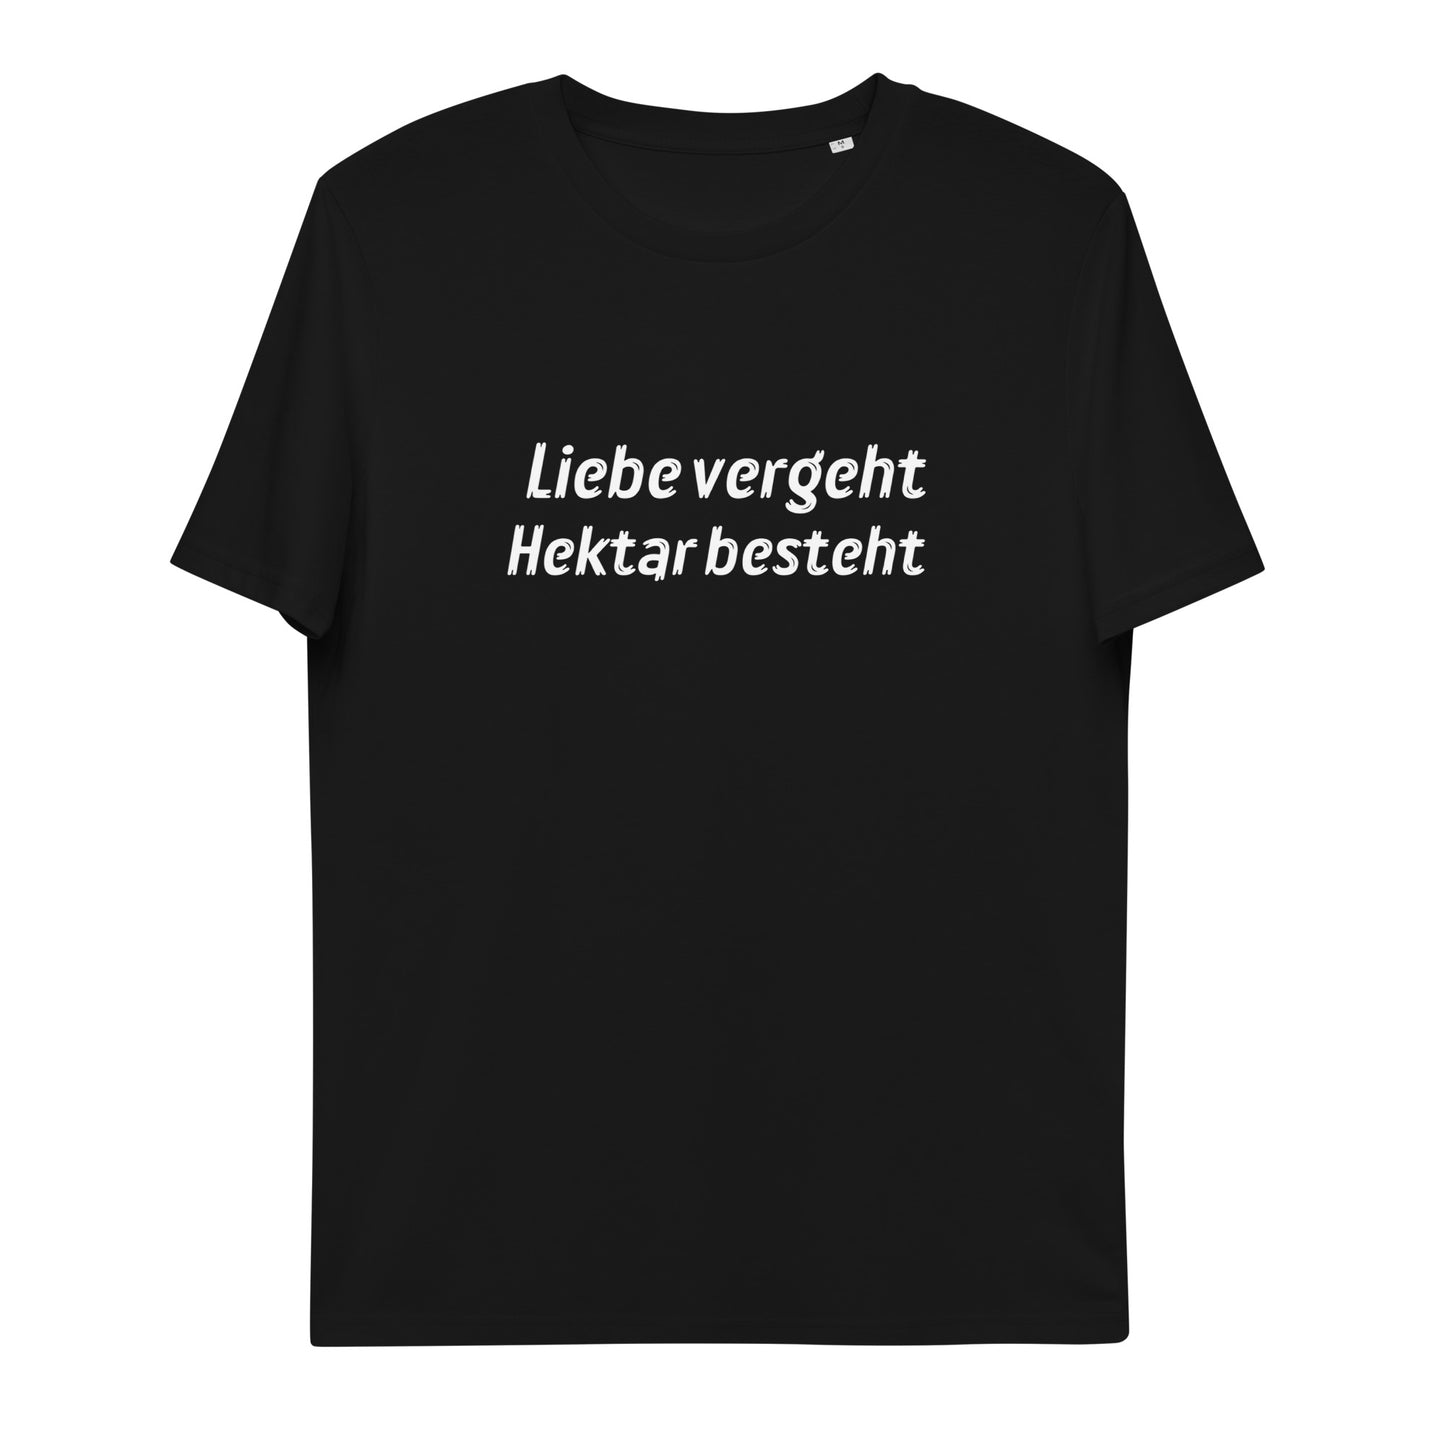 Liebe vergeht, Hektar besteht - Unisex T-Shirt